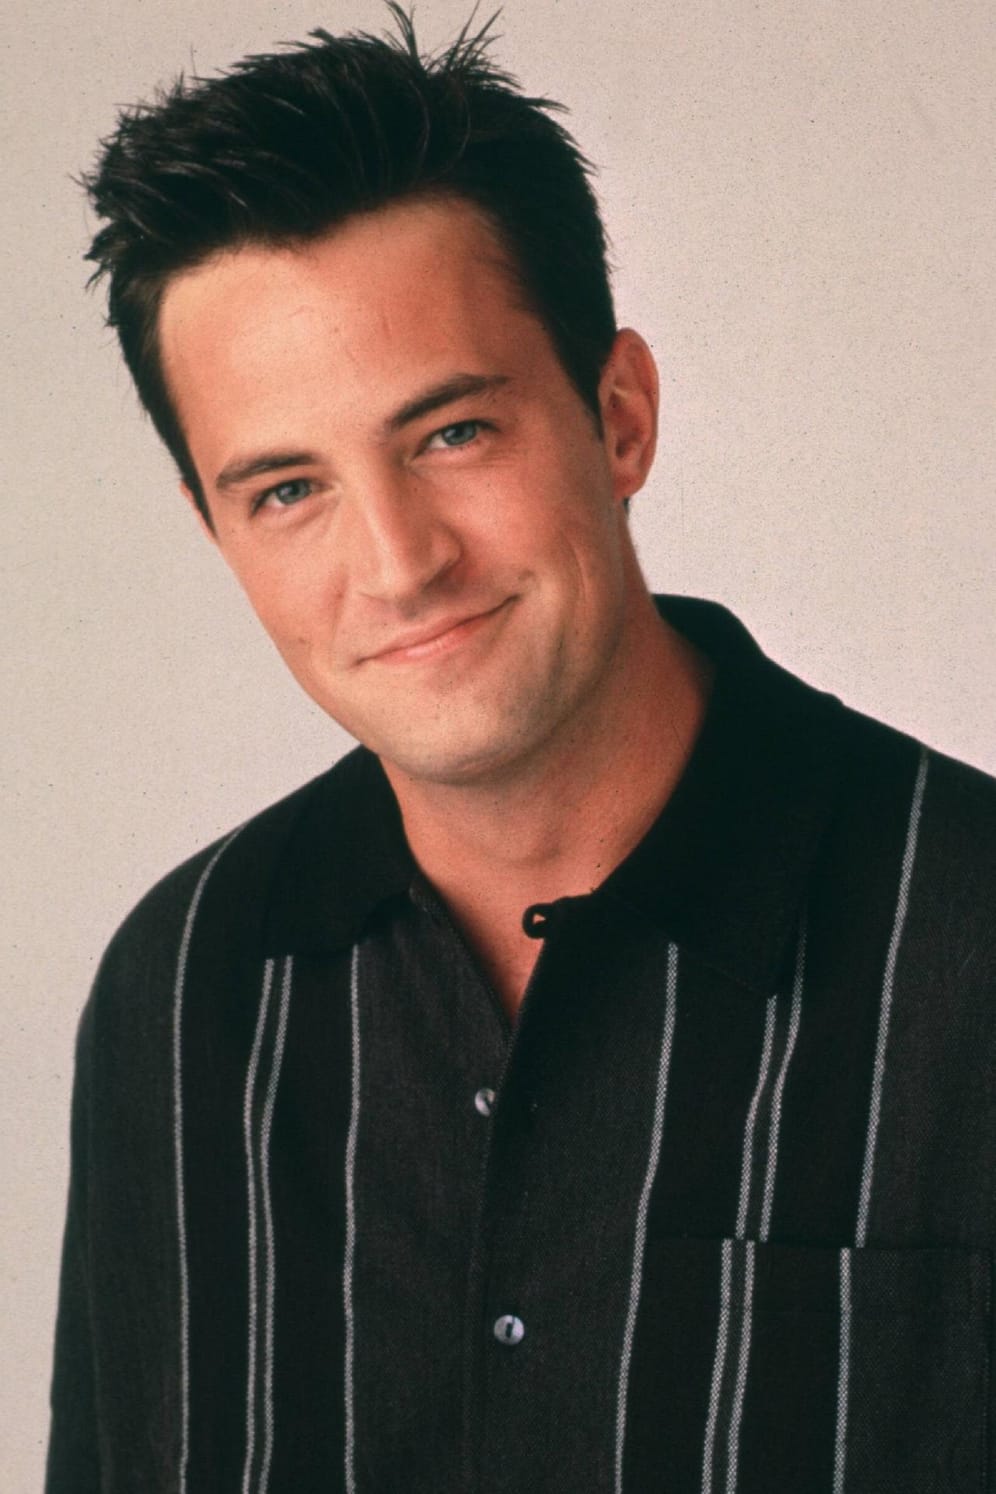 Matthew Perry spielte sich in den 90er-Jahren als Chandler Bing in die Herzen der Zuschauer.